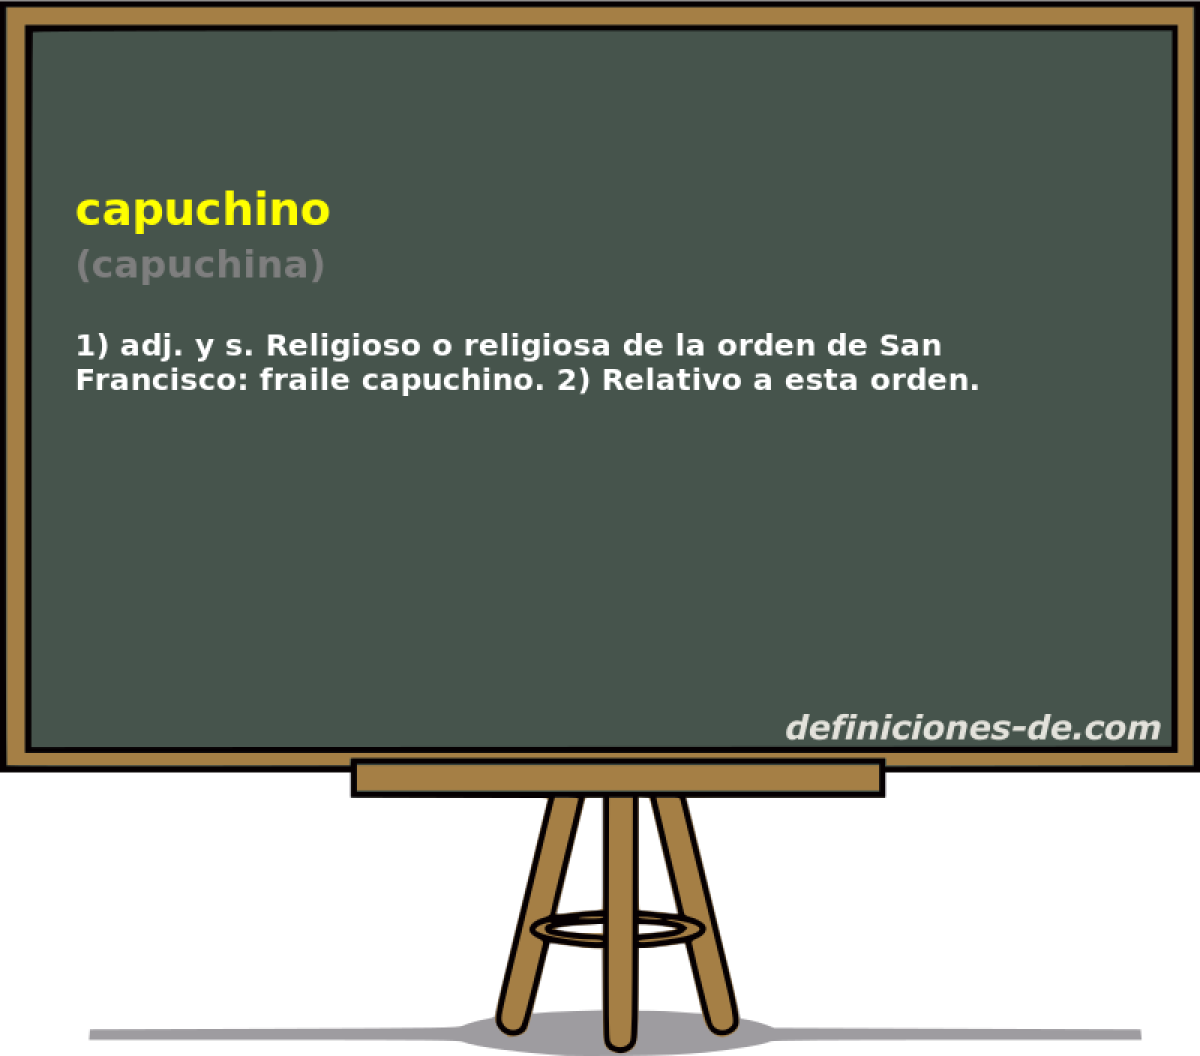 capuchino (capuchina)